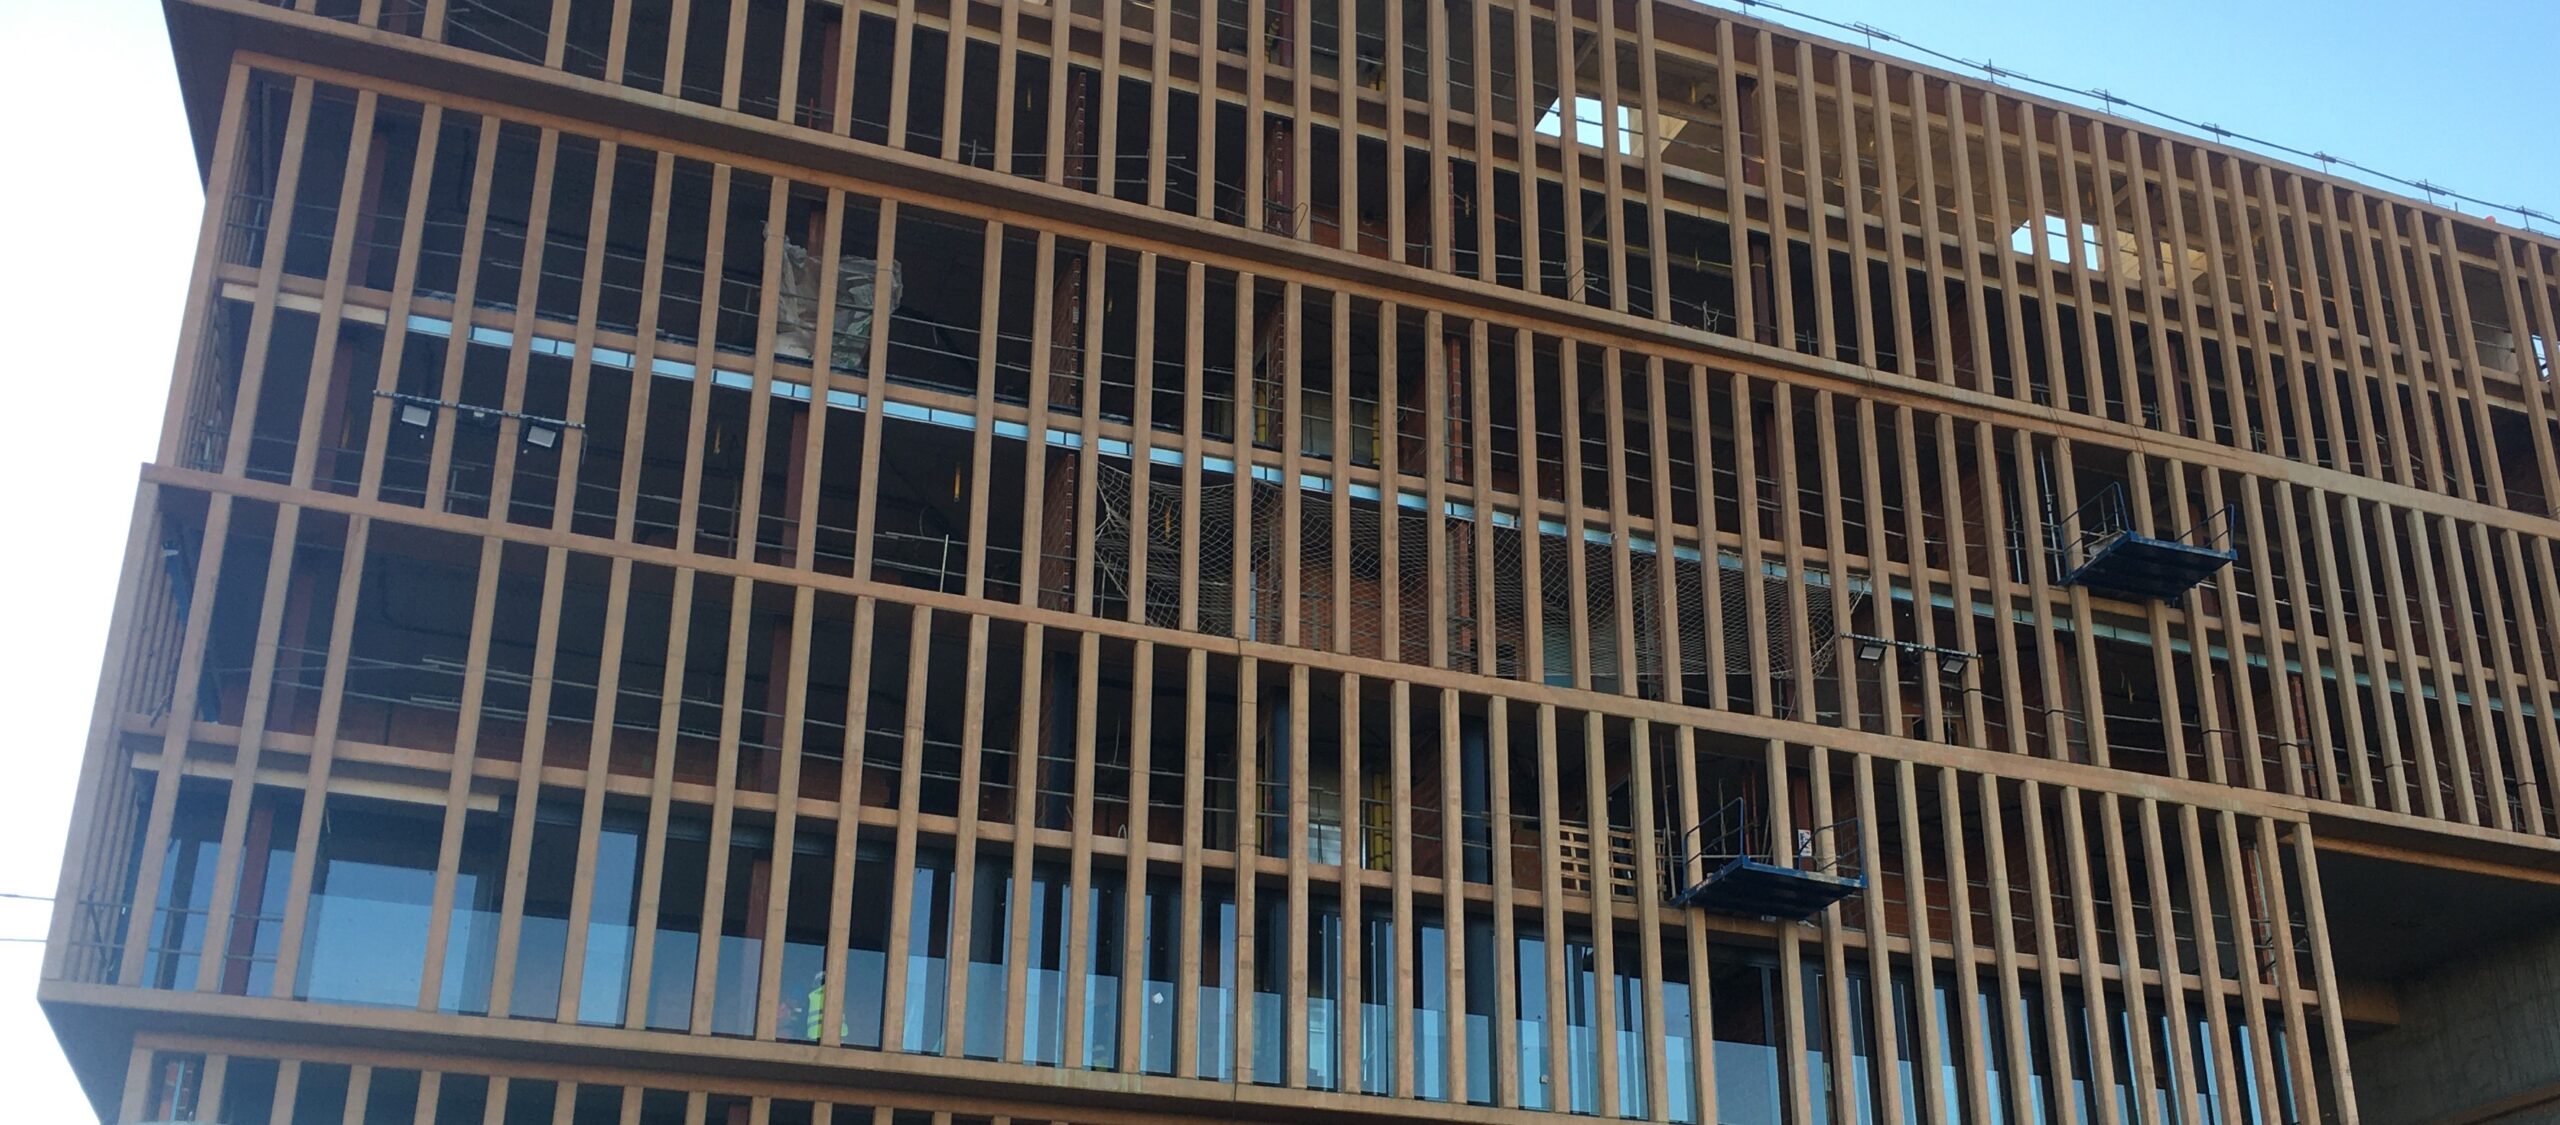 Pilar de fachada de hormigón prefabricado arquitectónico coloreado